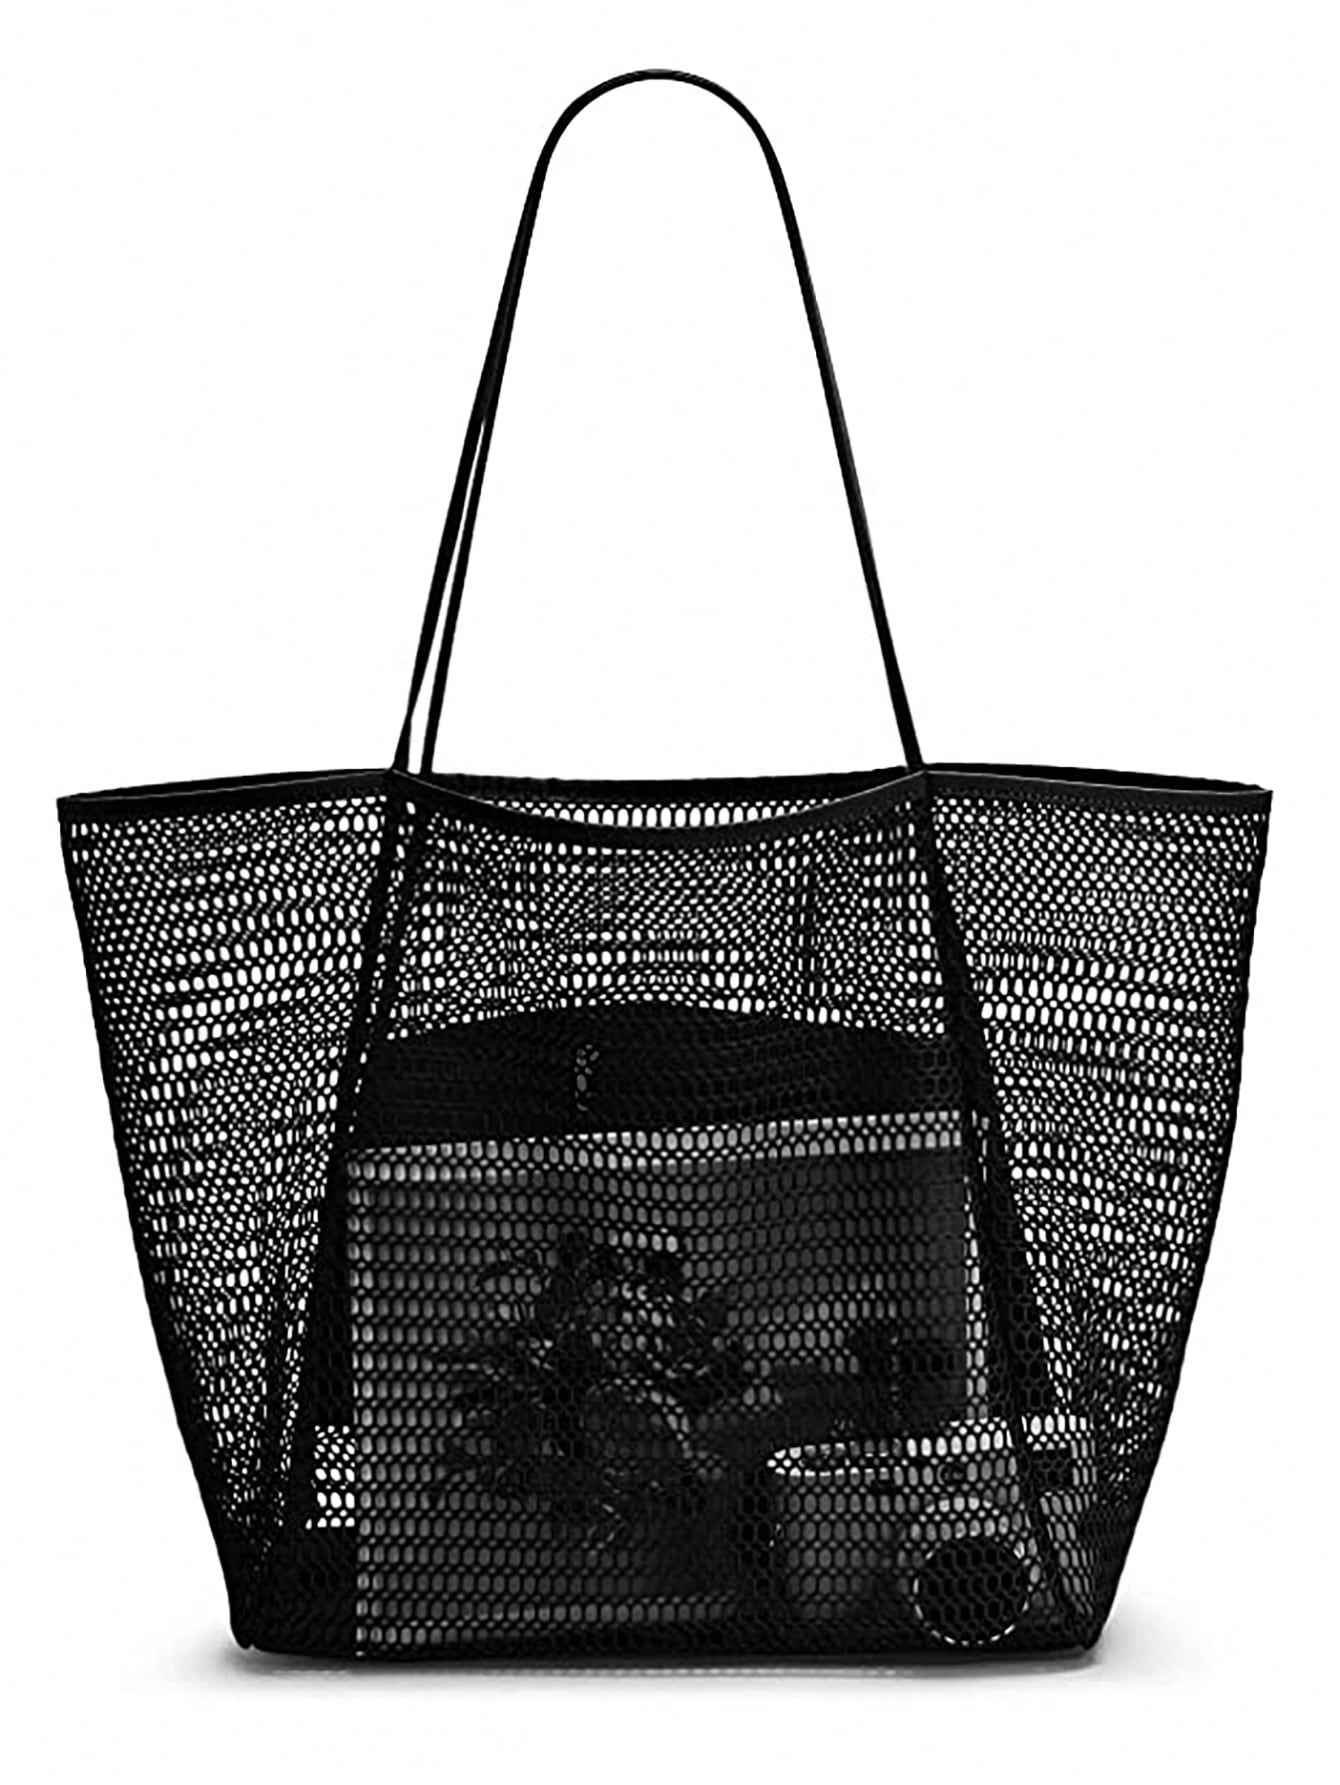 Пляжная сетчатая сумка-тоут, черный сумка с принтом русской куклы женская повседневная сумка женская сумка на плечо складная сумка для покупок пляжная сумка сумка